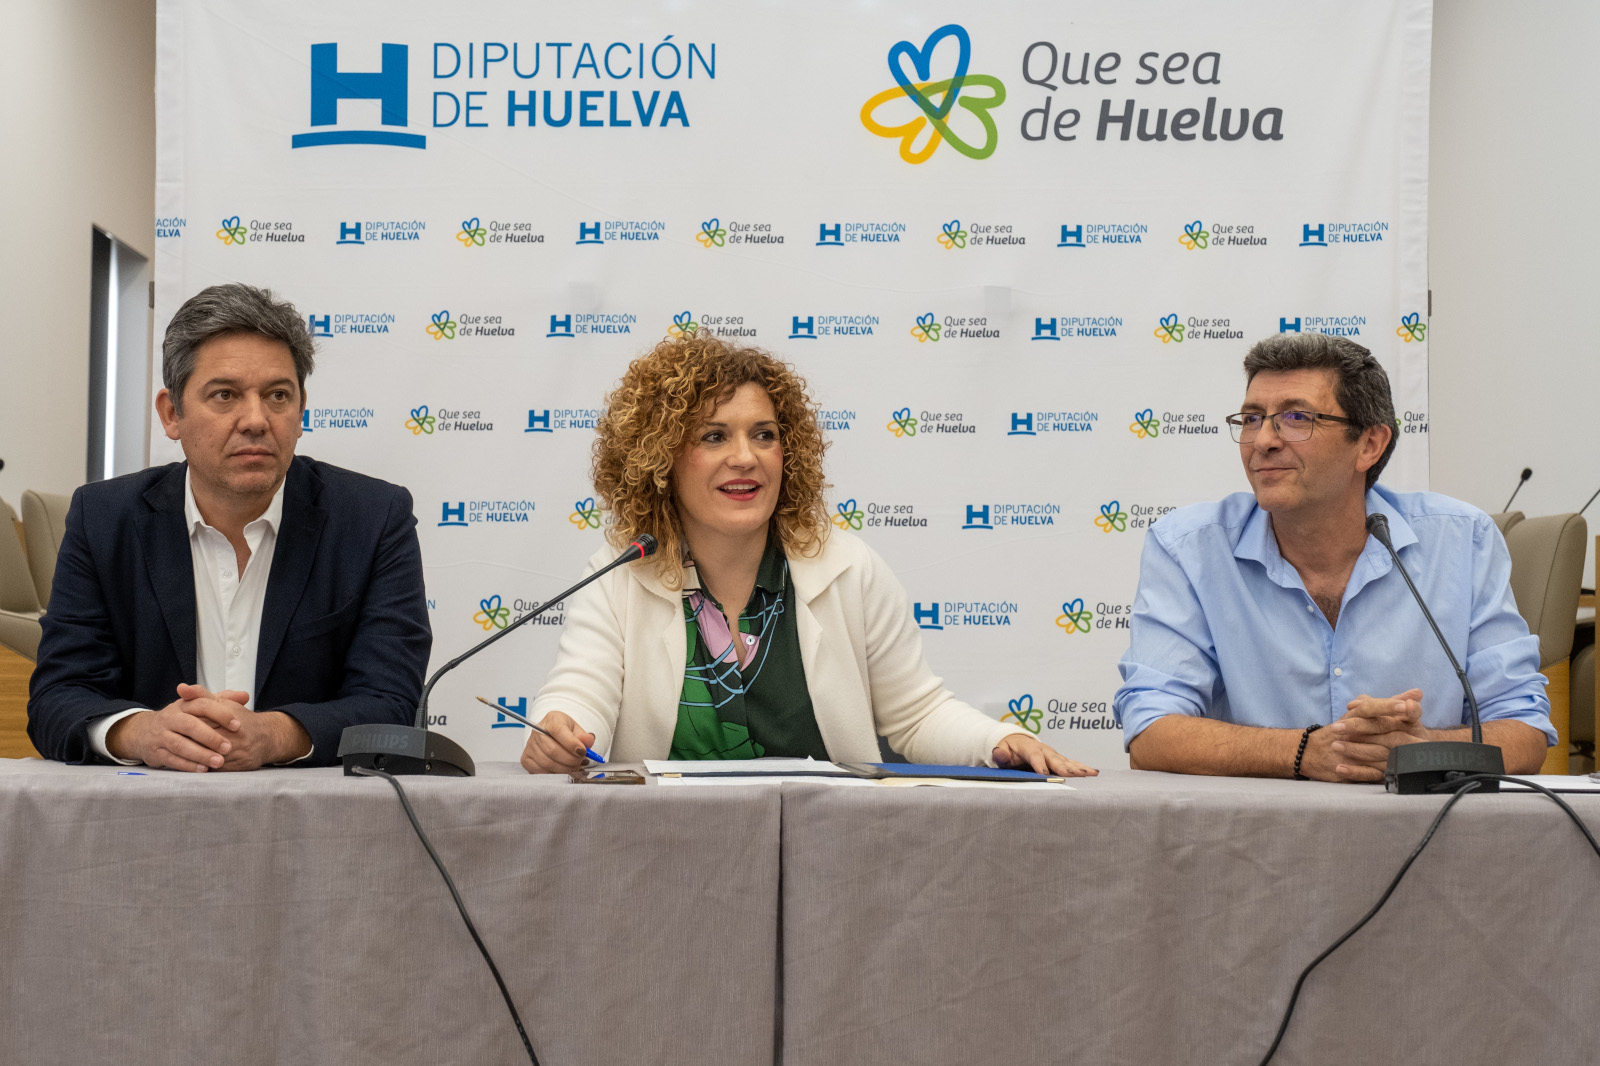 Huelva aspira a acoger el Geoparque Mundial de la UNESCO